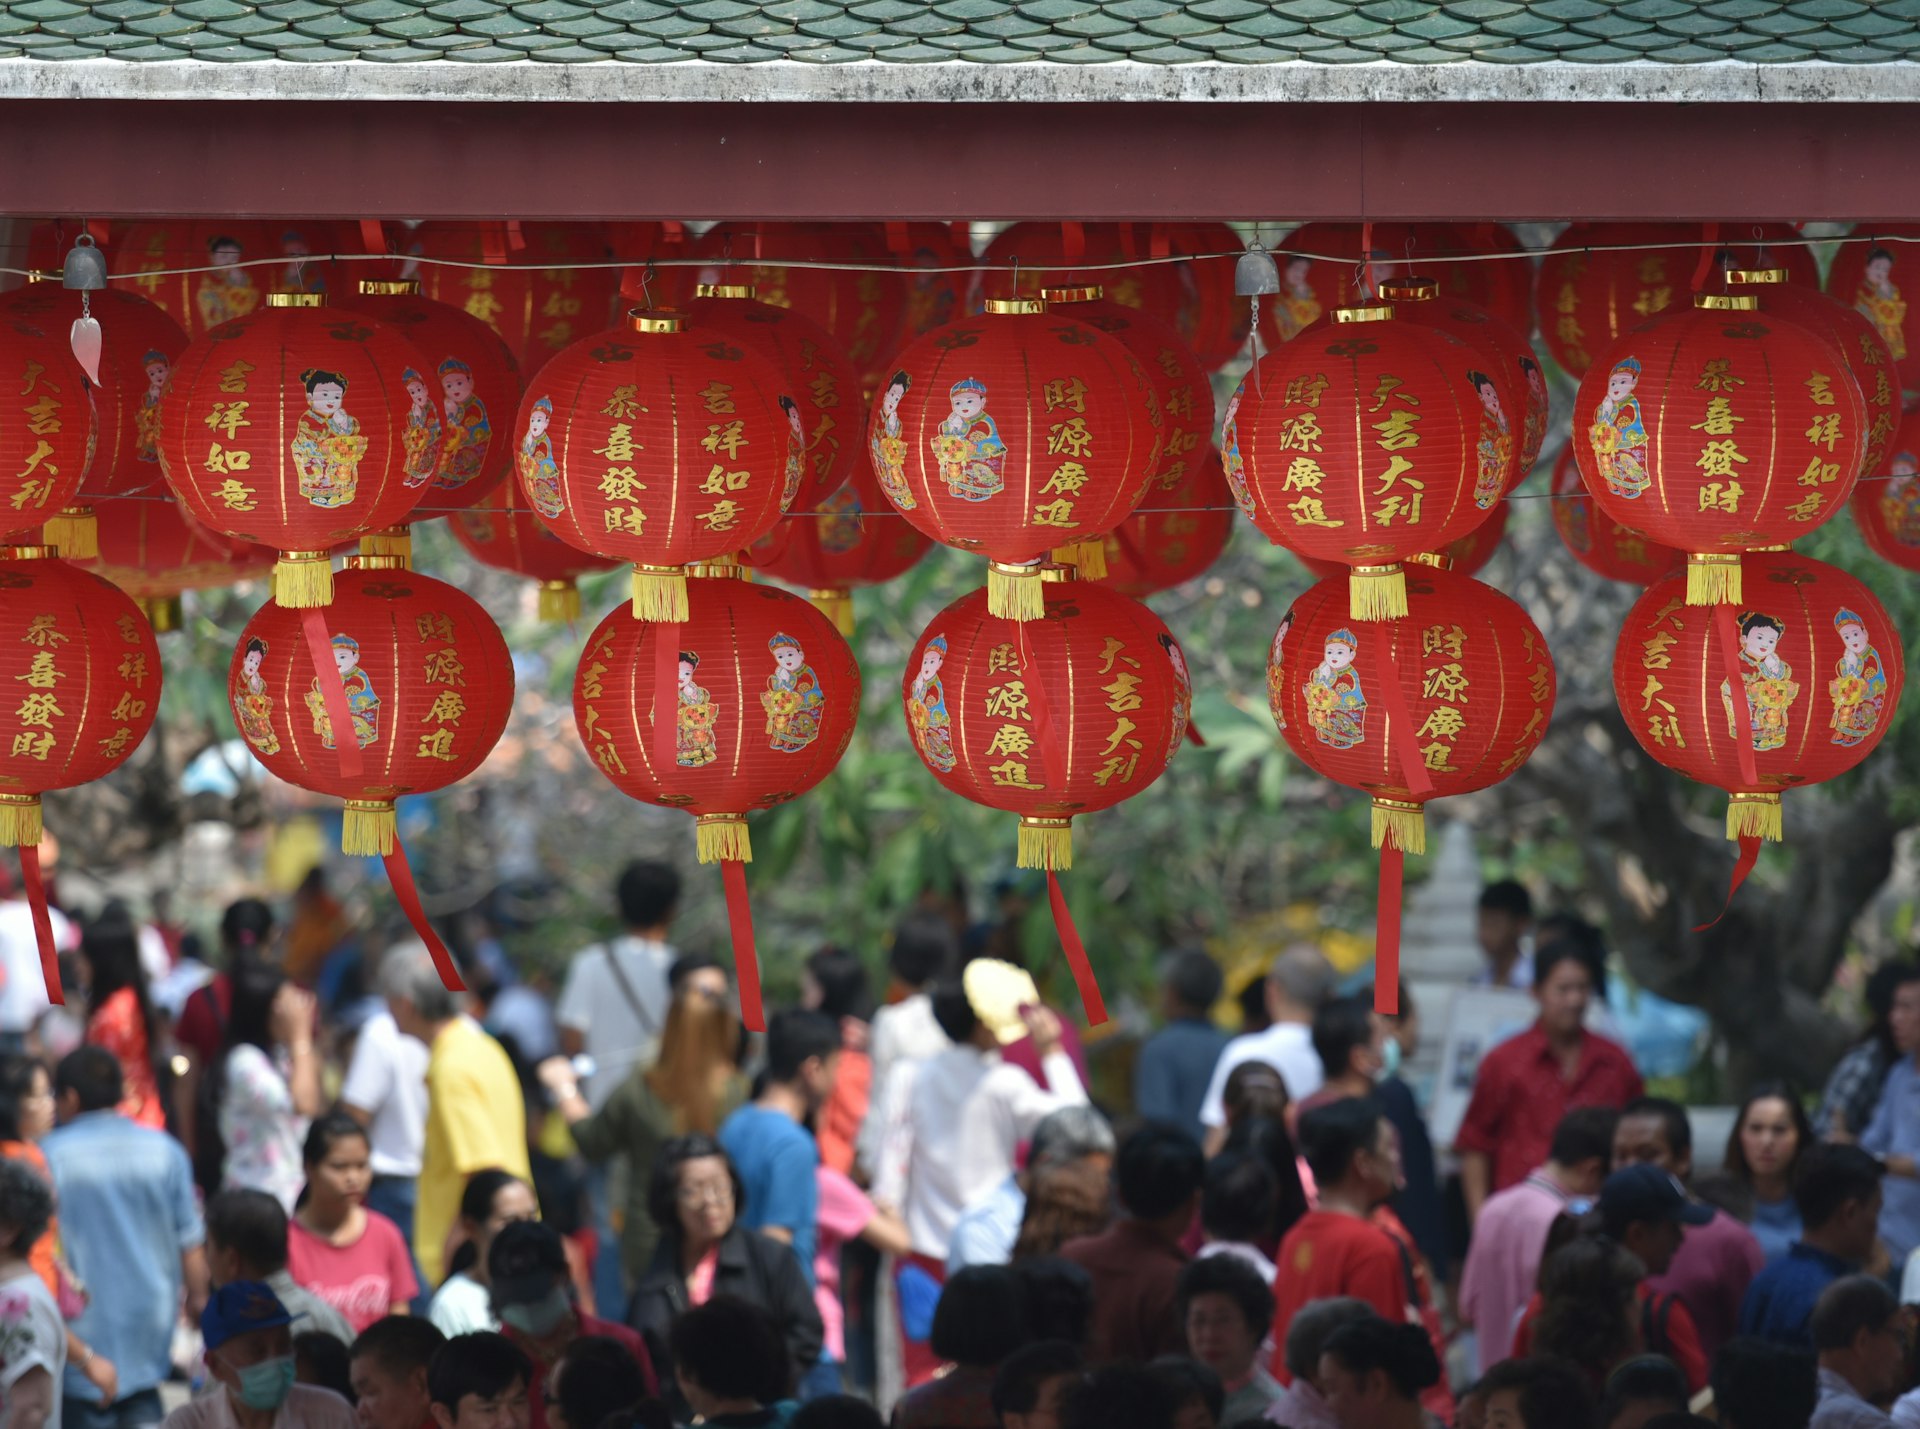 hanging round red lanterns near crowd at daytime